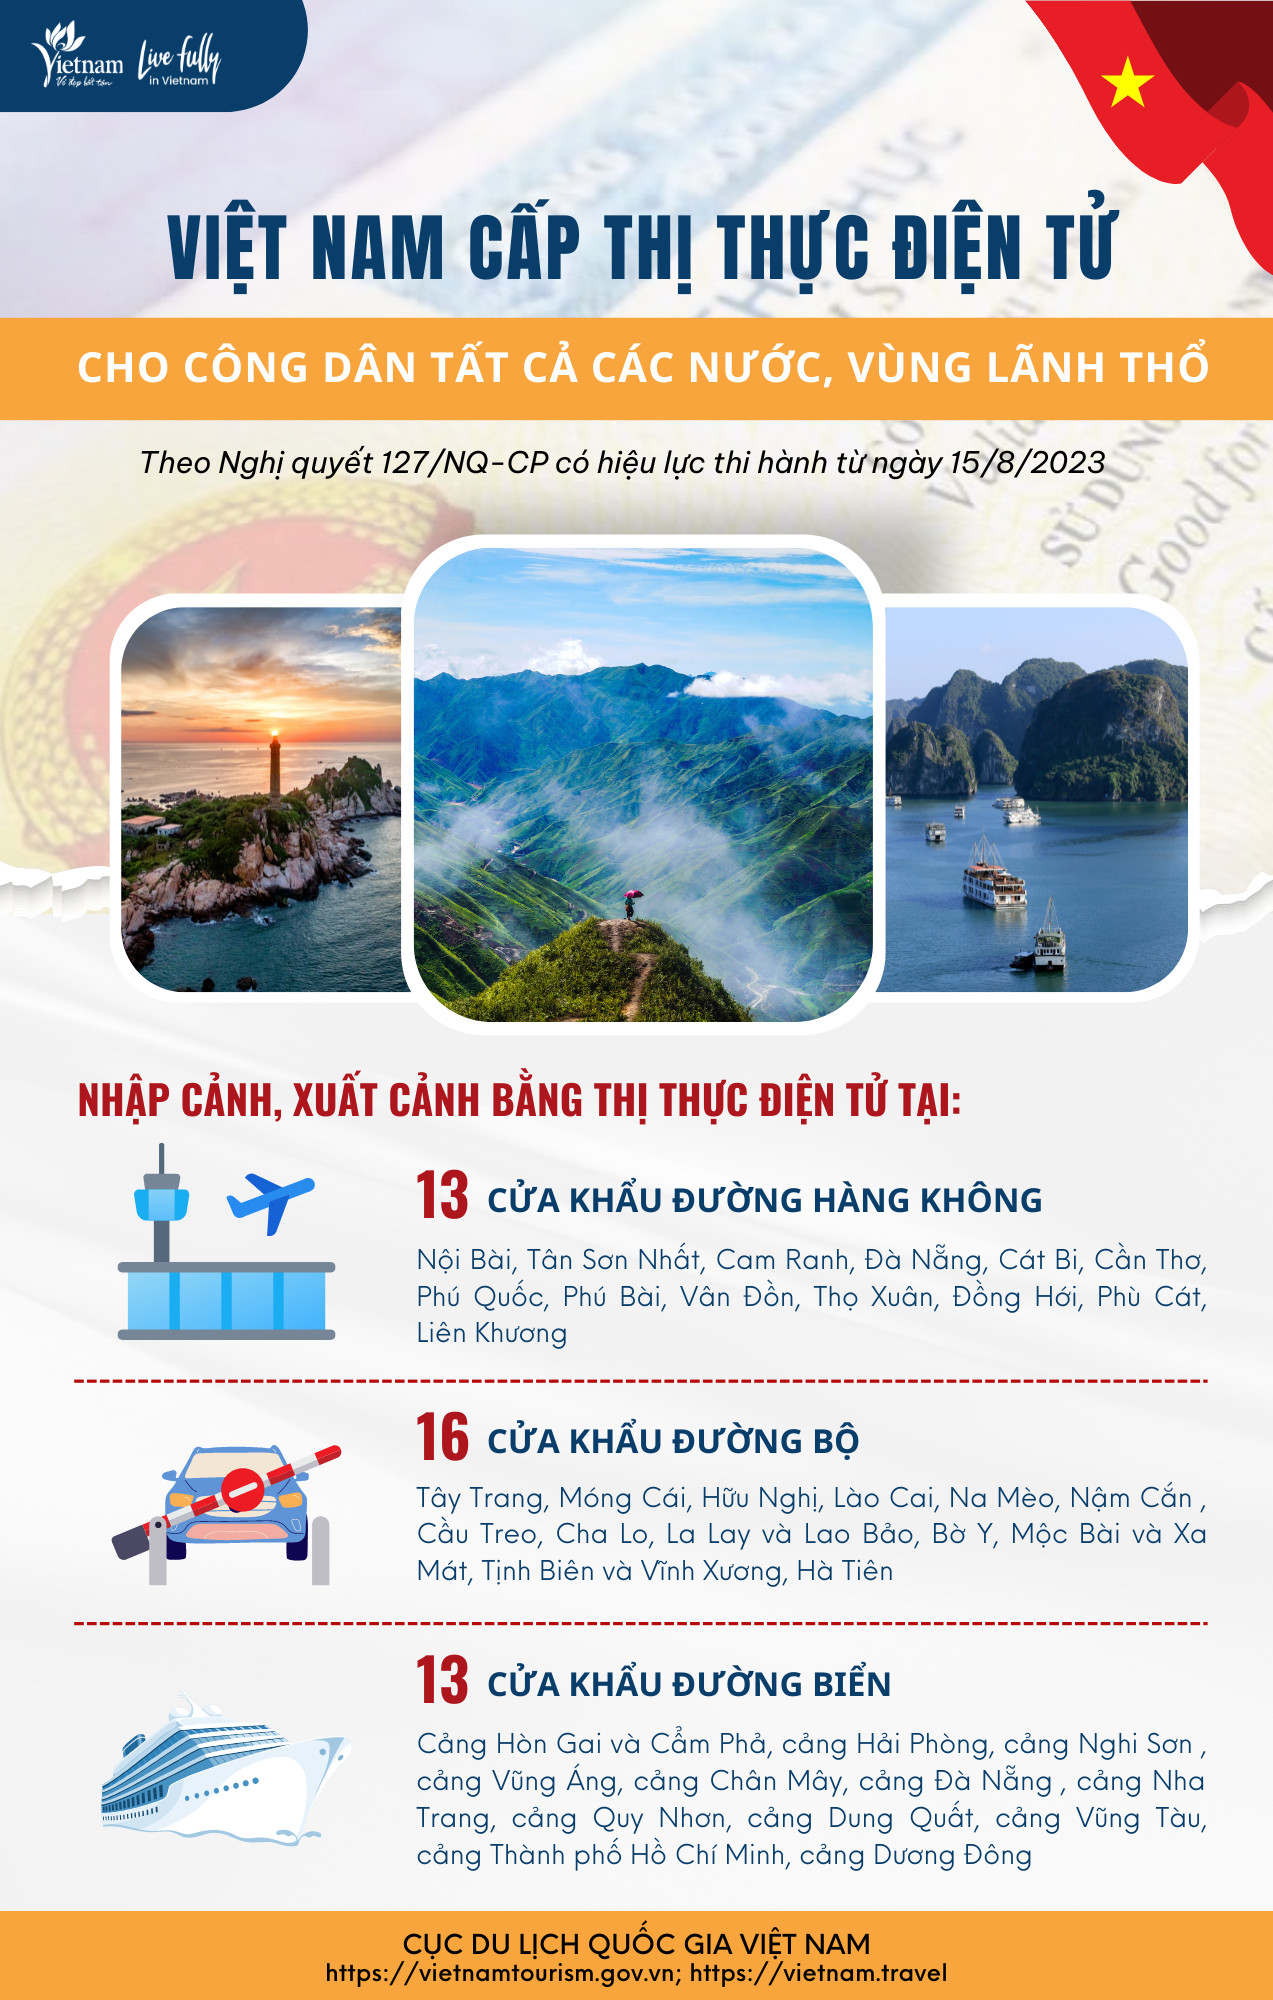 [Infographic] Việt Nam cấp thị thực điện tử cho tất cả các nước và vùng lãnh thổ